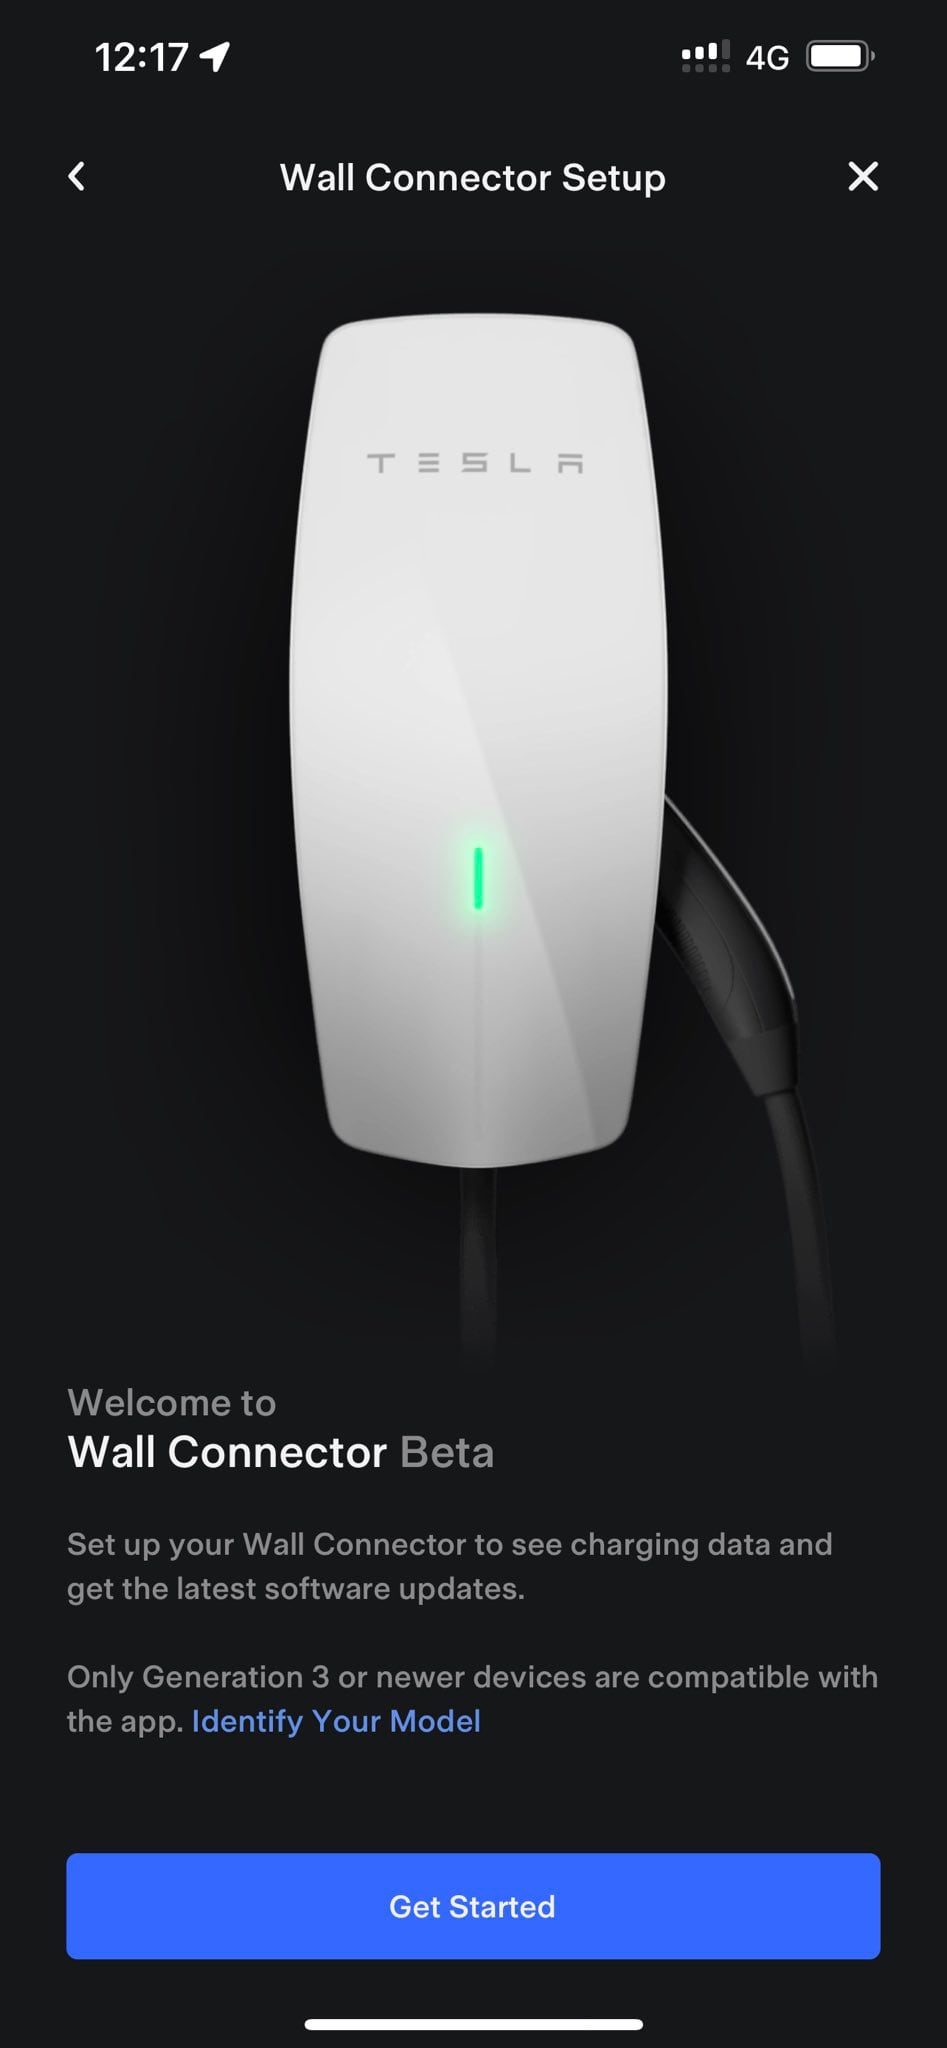 Factory Reset Tesla Gen 3 Wall Connector?